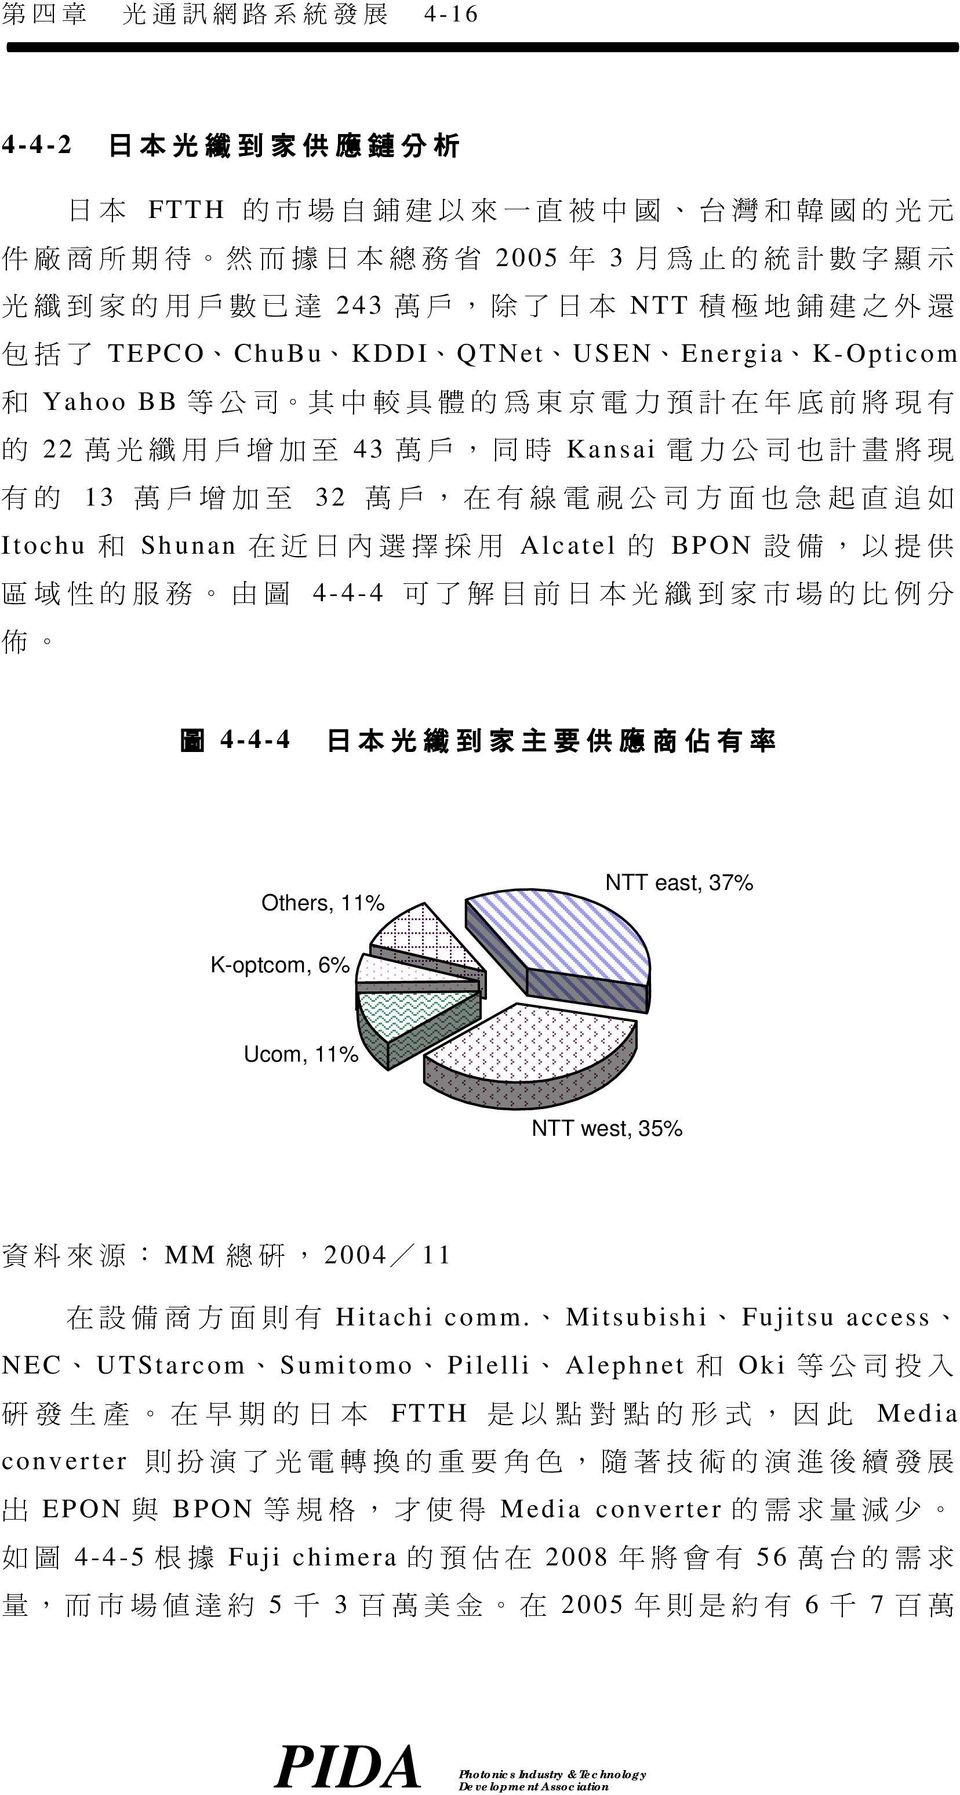 增 加 至 32 萬 戶, 在 有 線 電 視 公 司 方 面 也 急 起 直 追 如 Itochu 和 Shunan 在 近 日 內 選 擇 採 用 Alcatel 的 BPON 設 備, 以 提 供 區 域 性 的 服 務 由 圖 4-4-4 可 了 解 目 前 日 本 光 纖 到 家 市 場 的 比 例 分 佈 圖 4-4-4 日 本 光 纖 到 家 主 要 供 應 商 佔 有 率